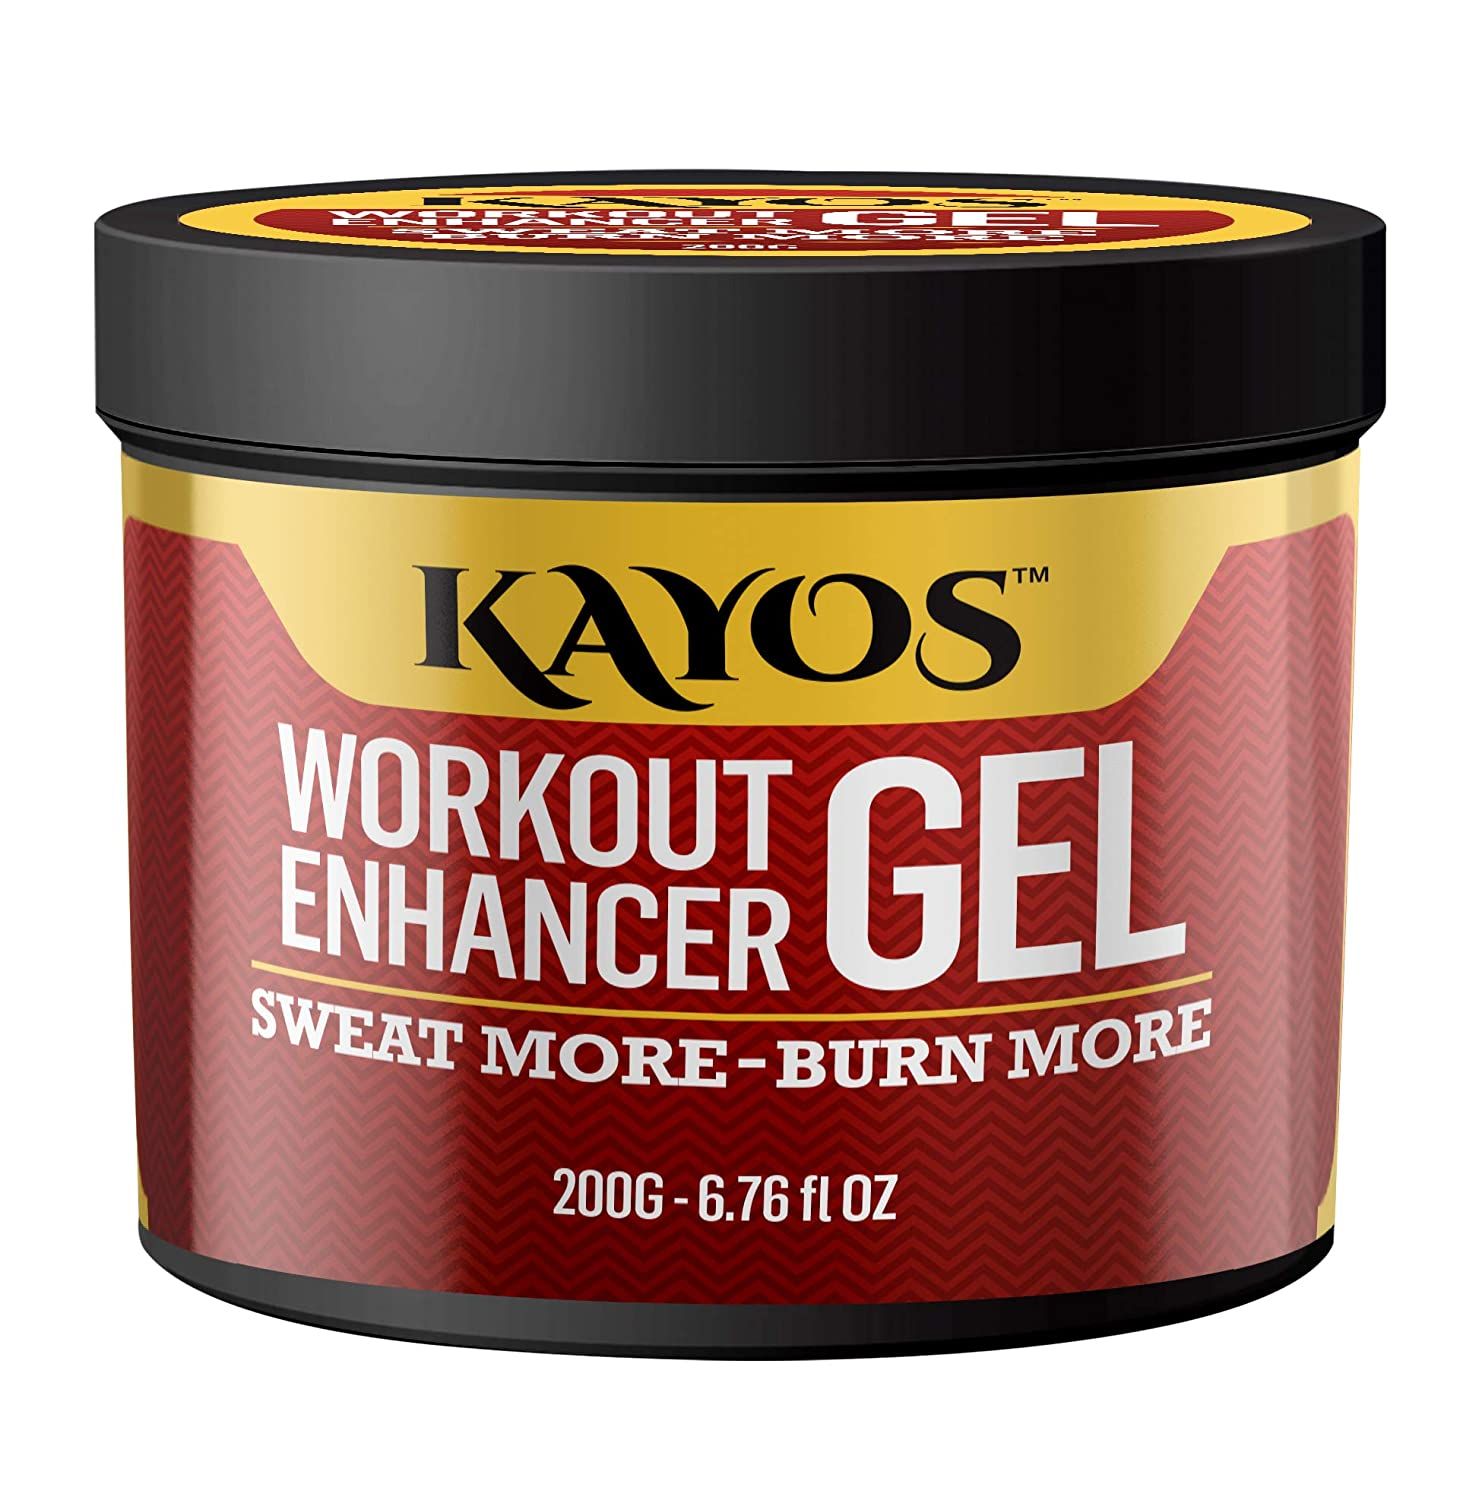 Kayos Workout Enhancer Gel Image